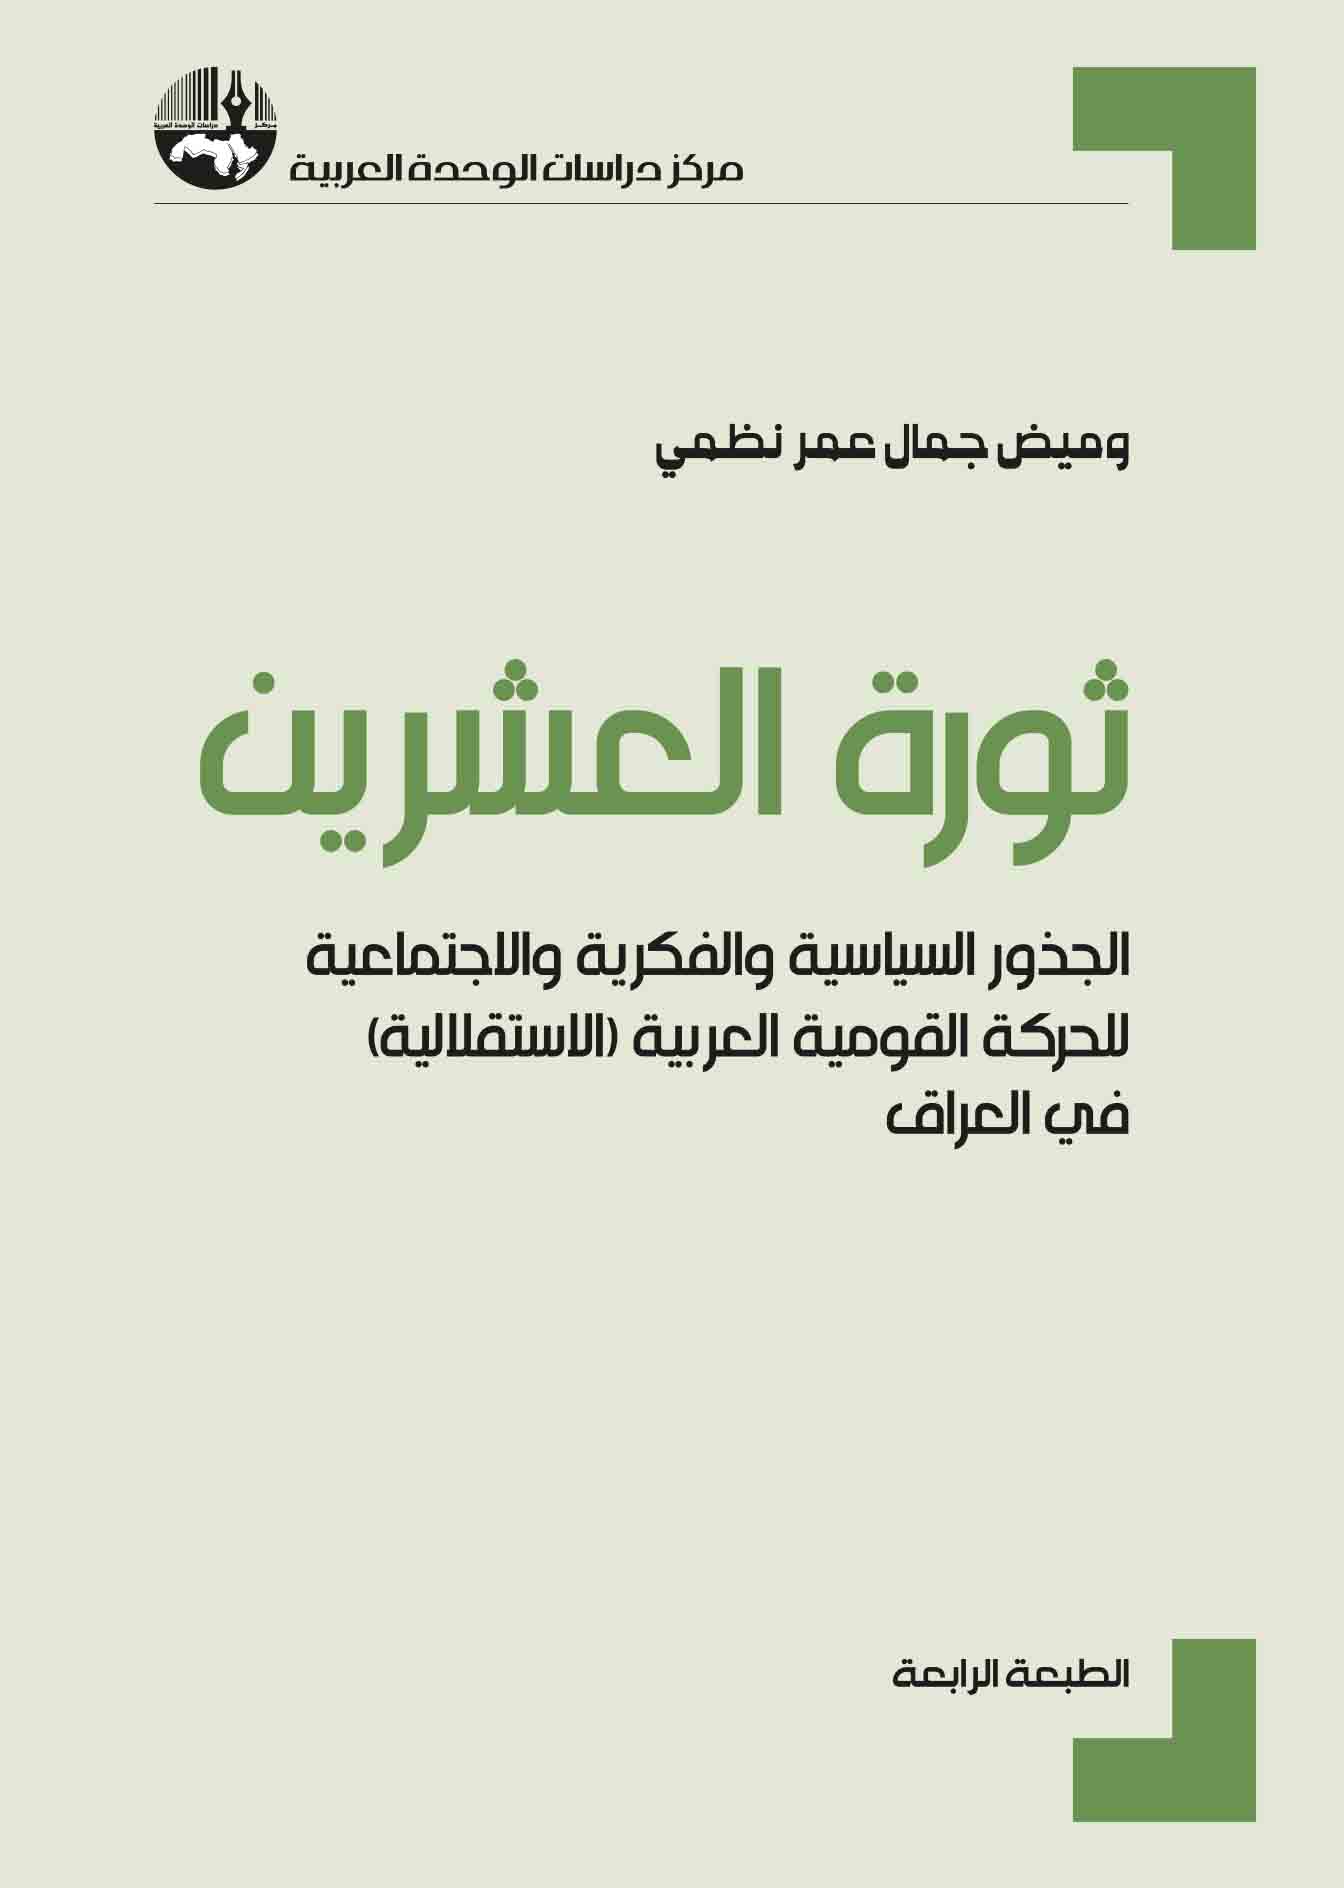 غلاف كتاب "ثورة العشرين" لوميض جمال عمر نظمي